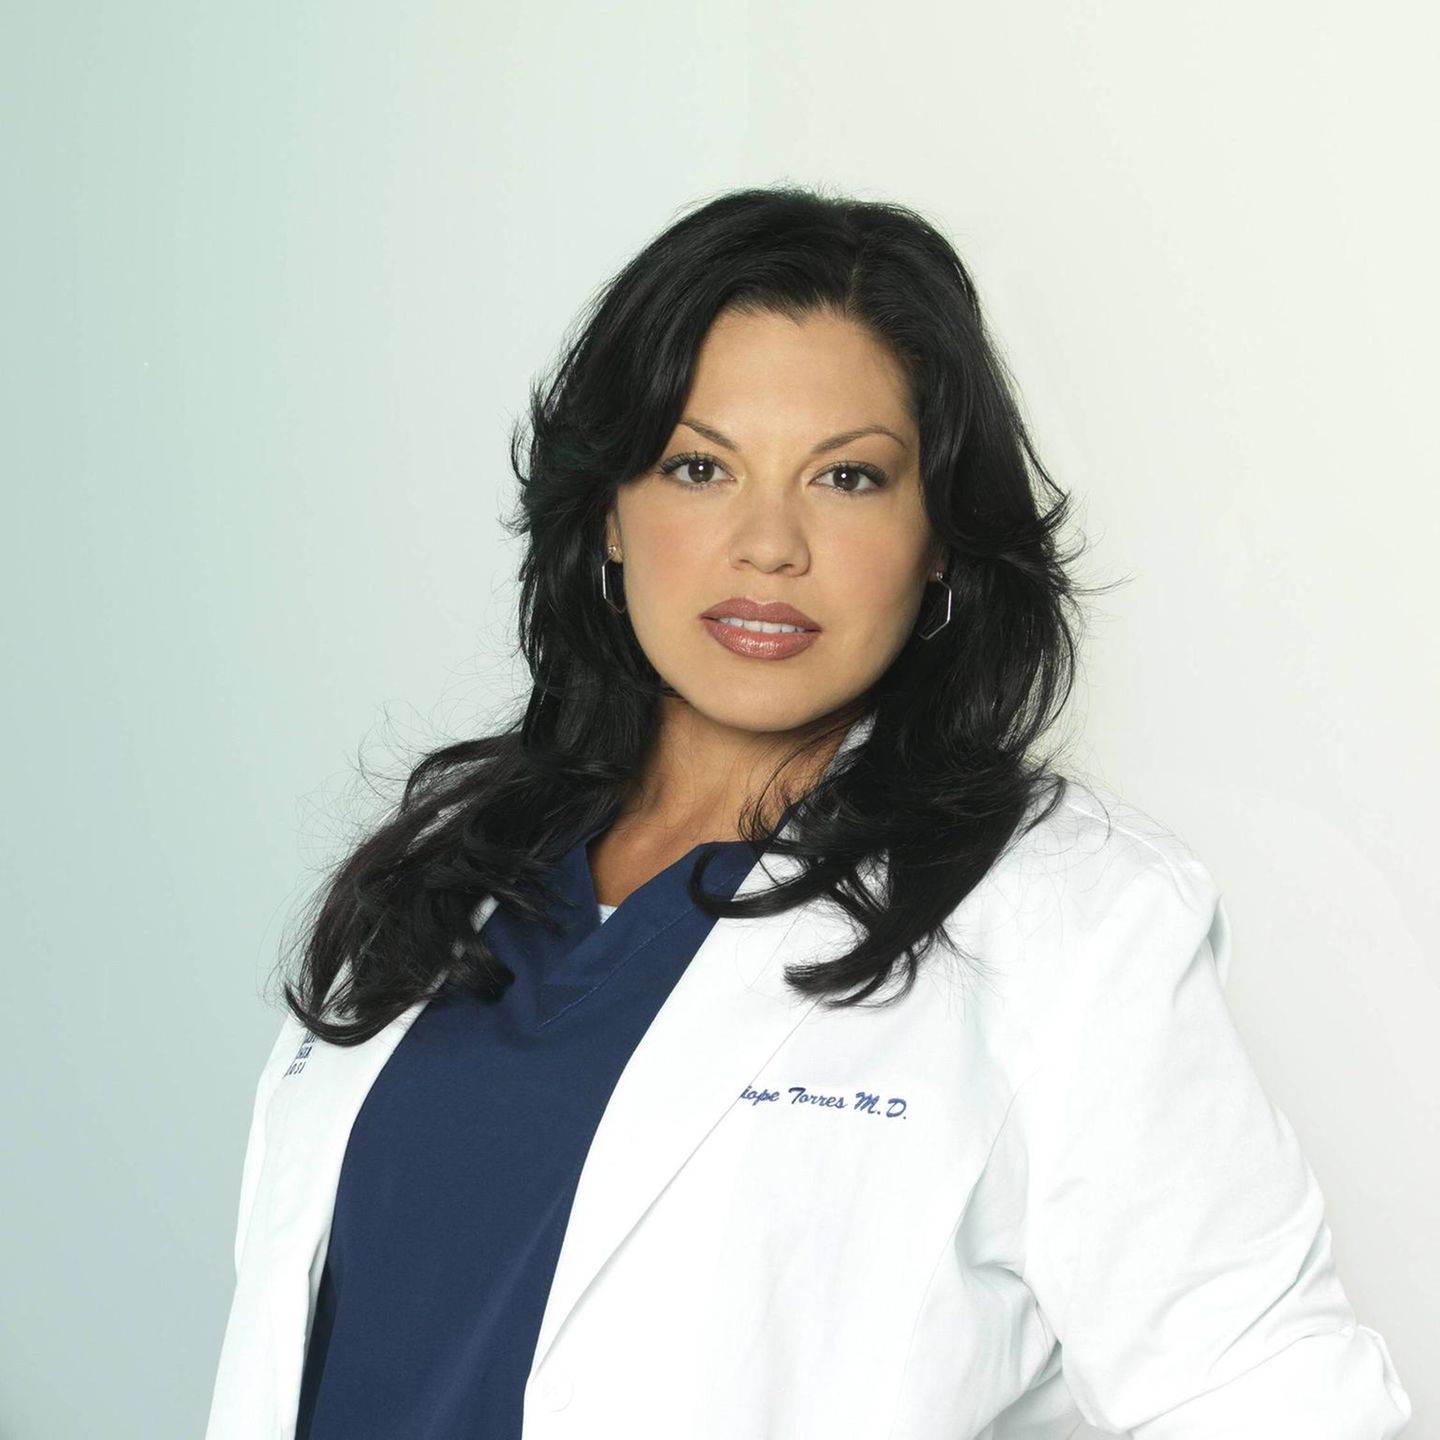 Sara Ramirez bei einem Foto-Shoot für "Grey's Anatomy" 2010